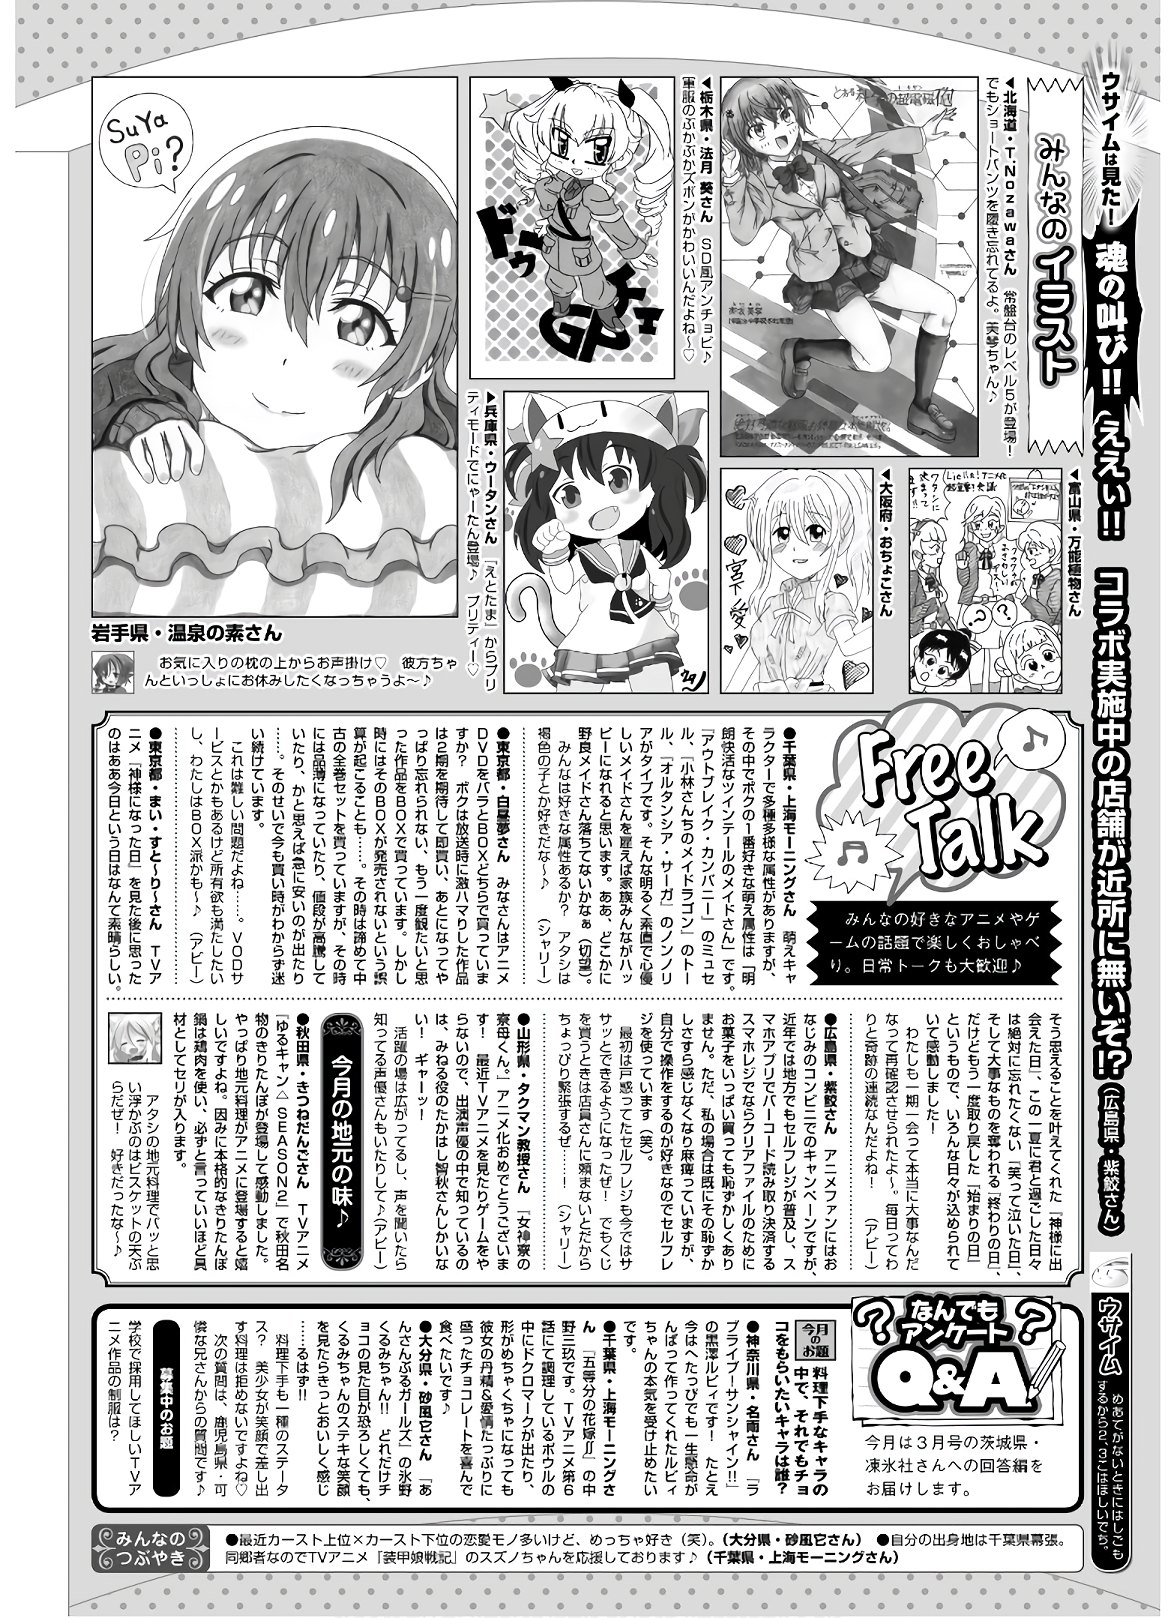 Dengeki G's Magazine #286 - May 2021 139